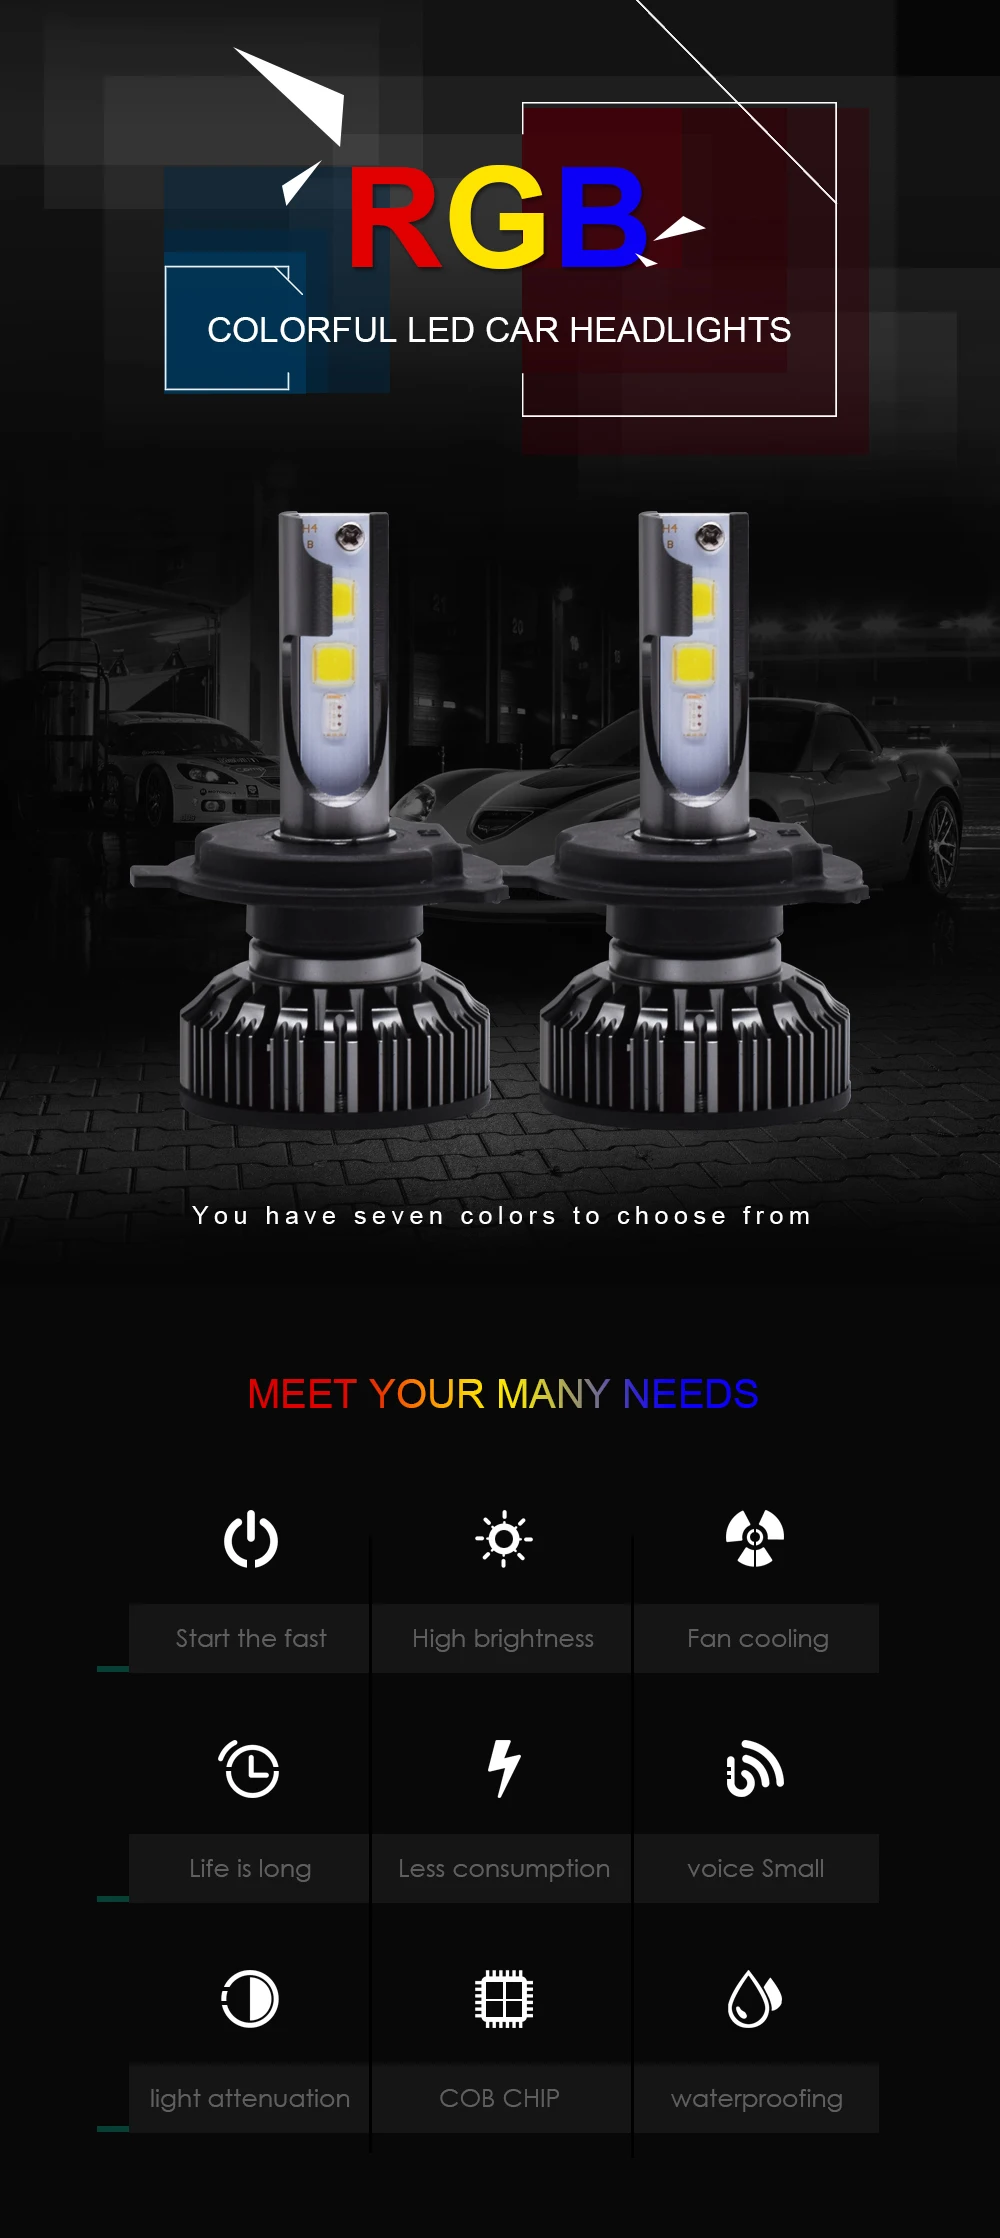 EURS(TM) светодиодный автомобильный головной светильник s RGB светильник Bluetooth управление H1 H3 H4 H7 H11 Автомобильная противотуманная фара 880 9005 9006 COB Высокая яркость 20W